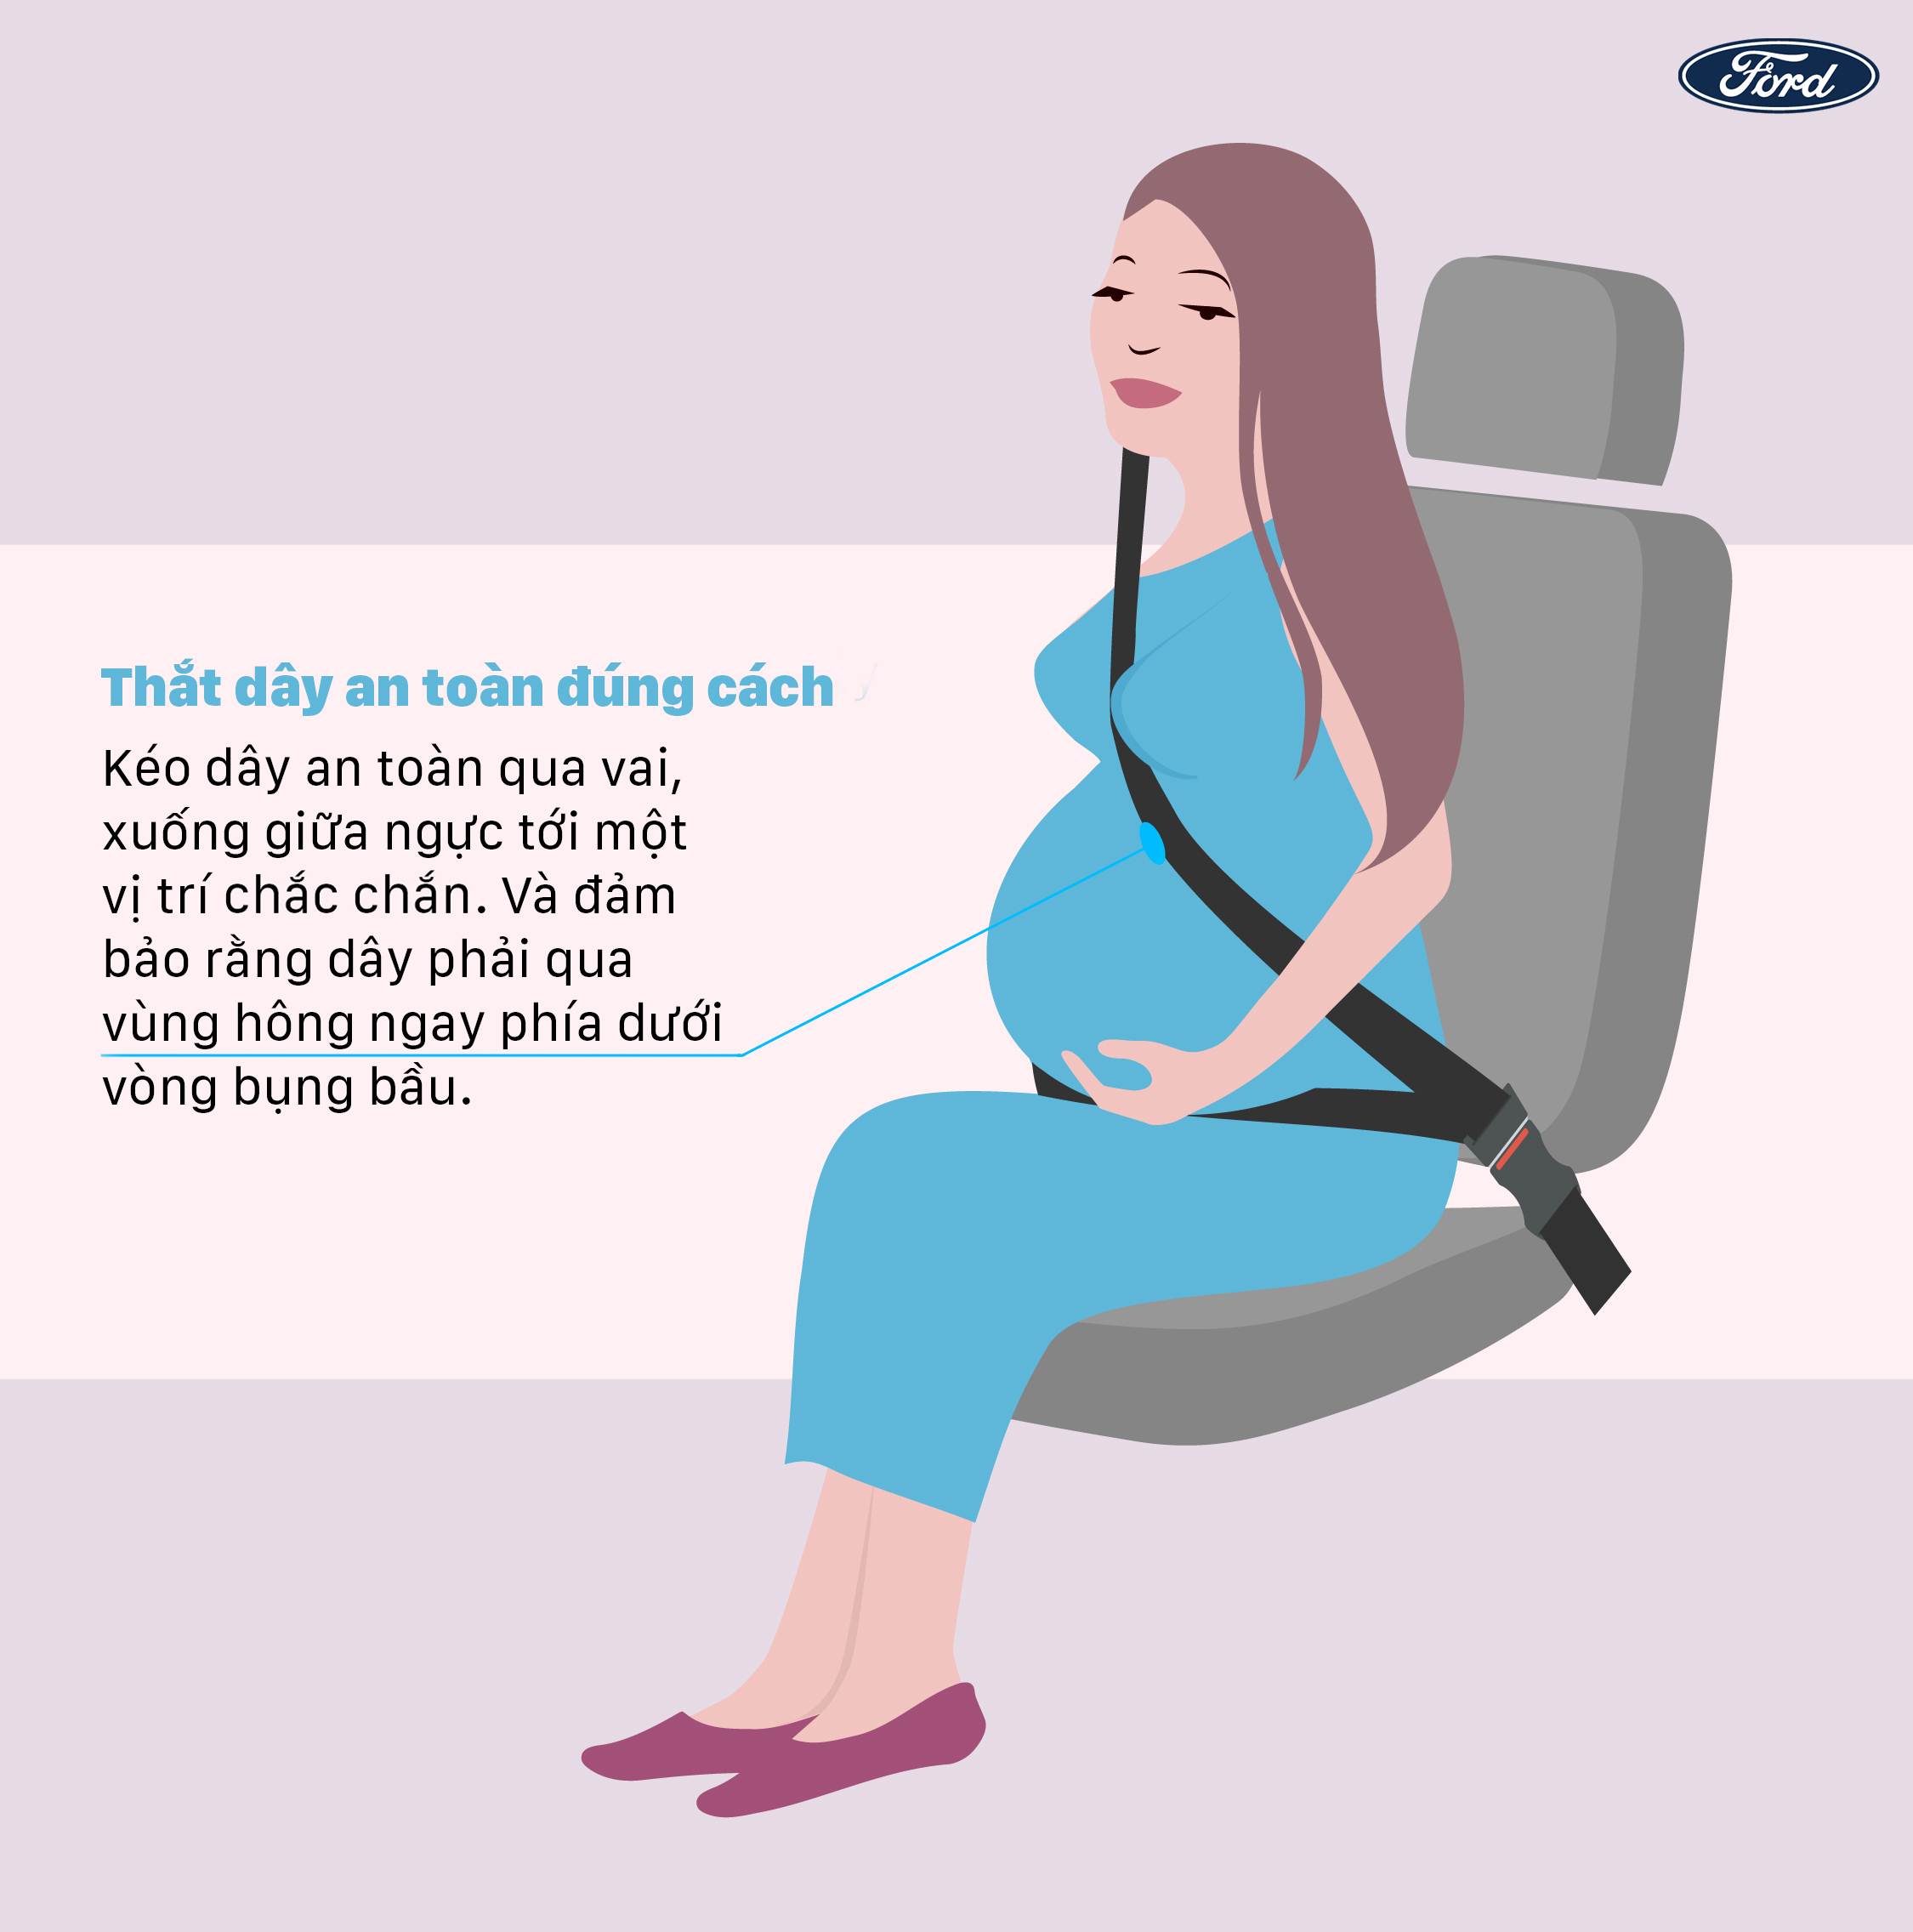 4 bí kíp lái xe an toàn dành cho phụ nữ mang bầu